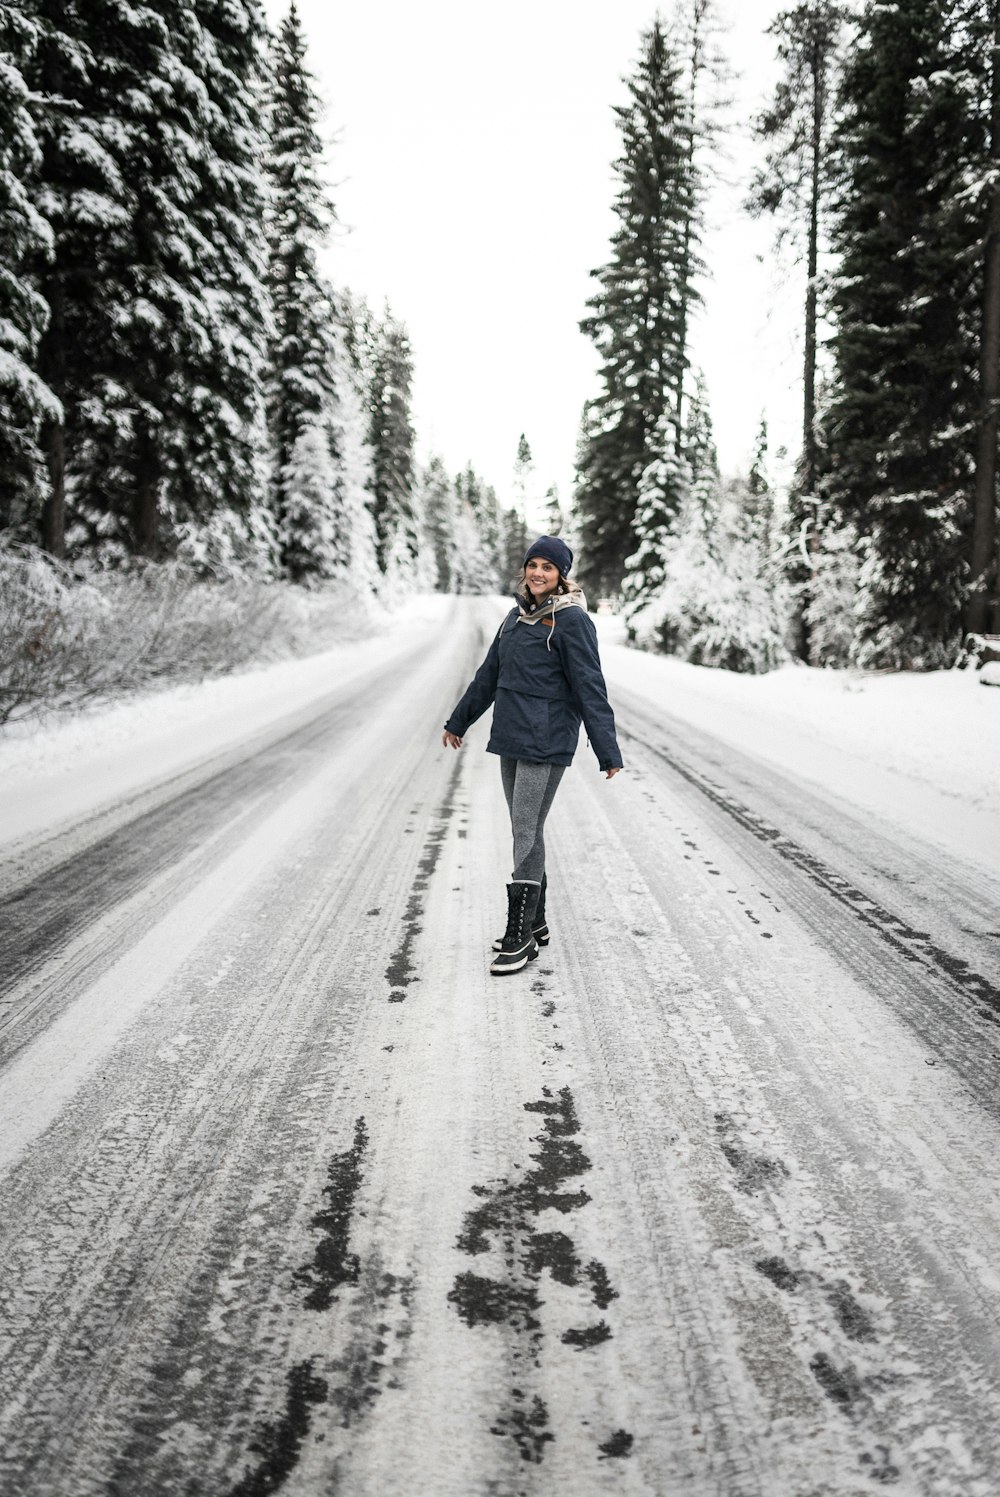 Frau im blauen Kittel geht tagsüber auf schneebedeckter Straße spazieren